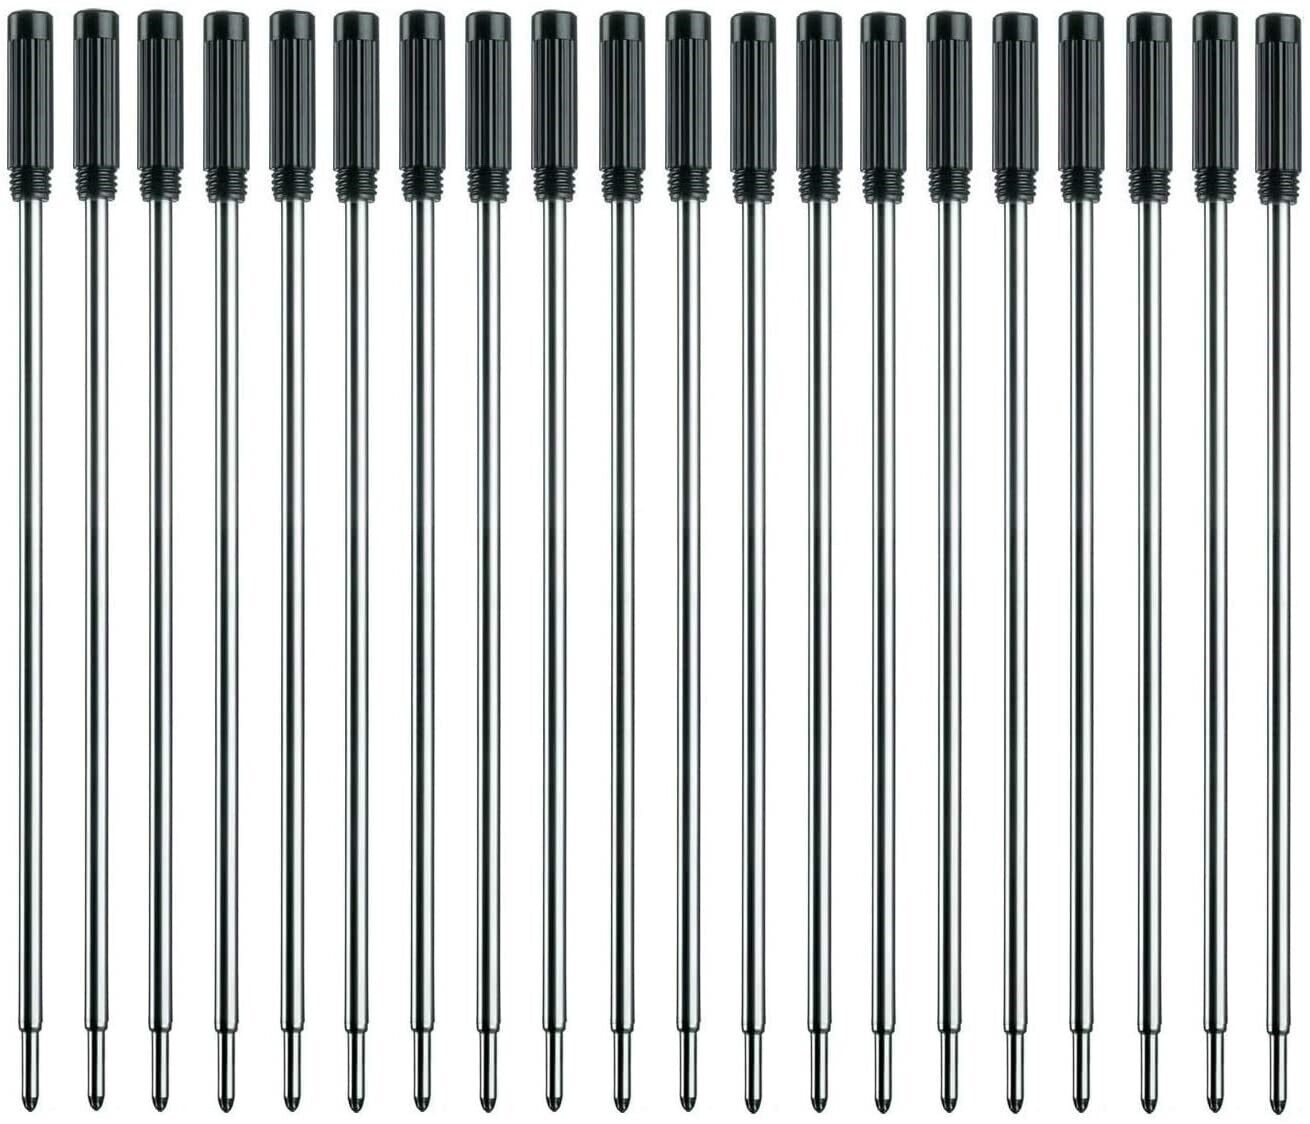 L:4.5 In Ballpoint Pen Refills for Cross Pens,Medium Point,Black Ink,Pack of 20 Без бренда